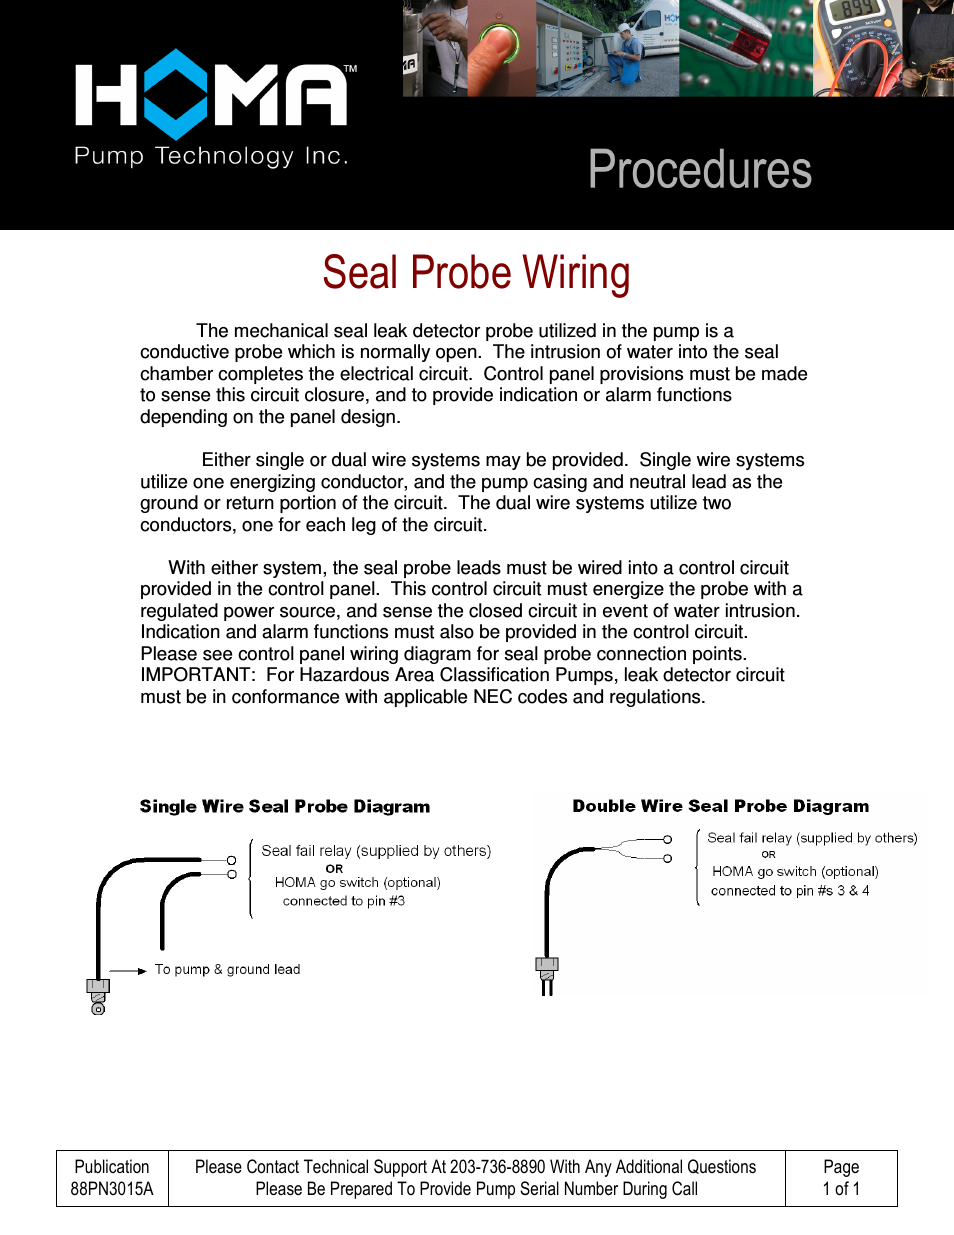 External Seal Probe Wiring